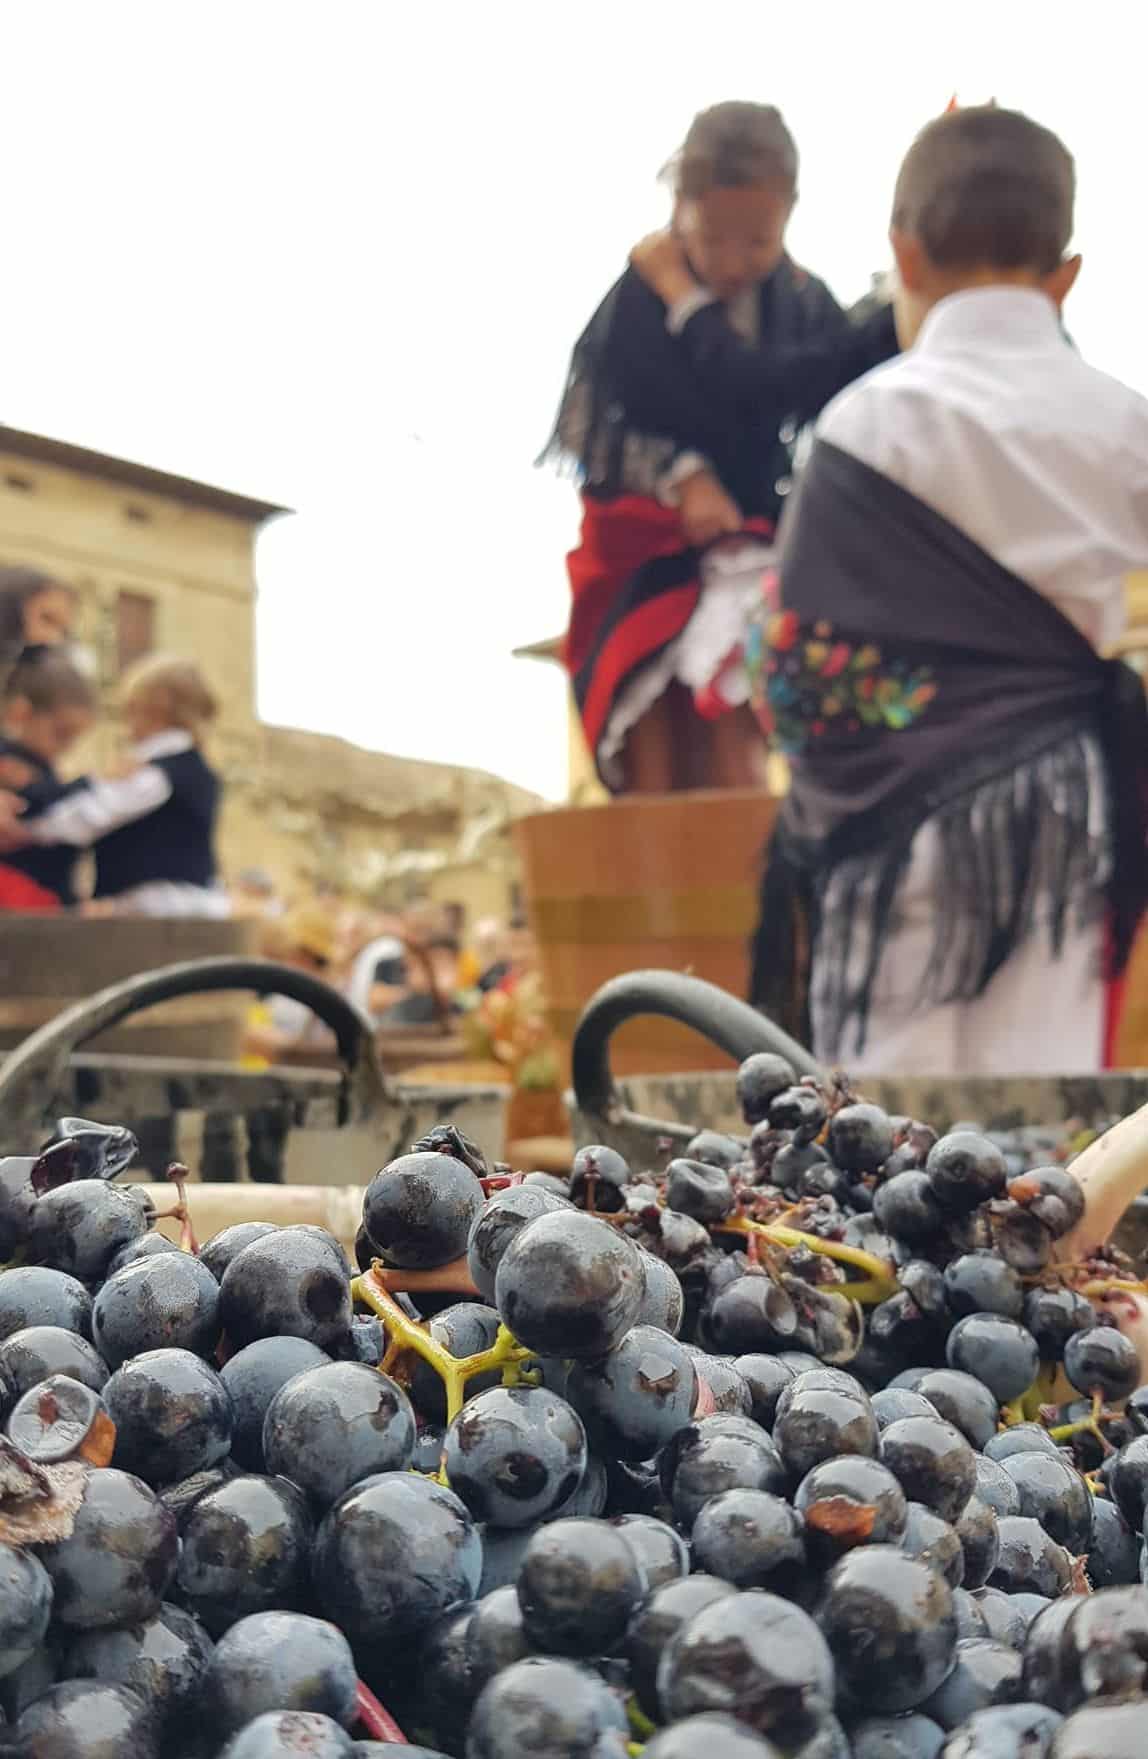 FOTOS: Cuzcurrita se llena de público en su jornada dedicada al arte y al vino 7